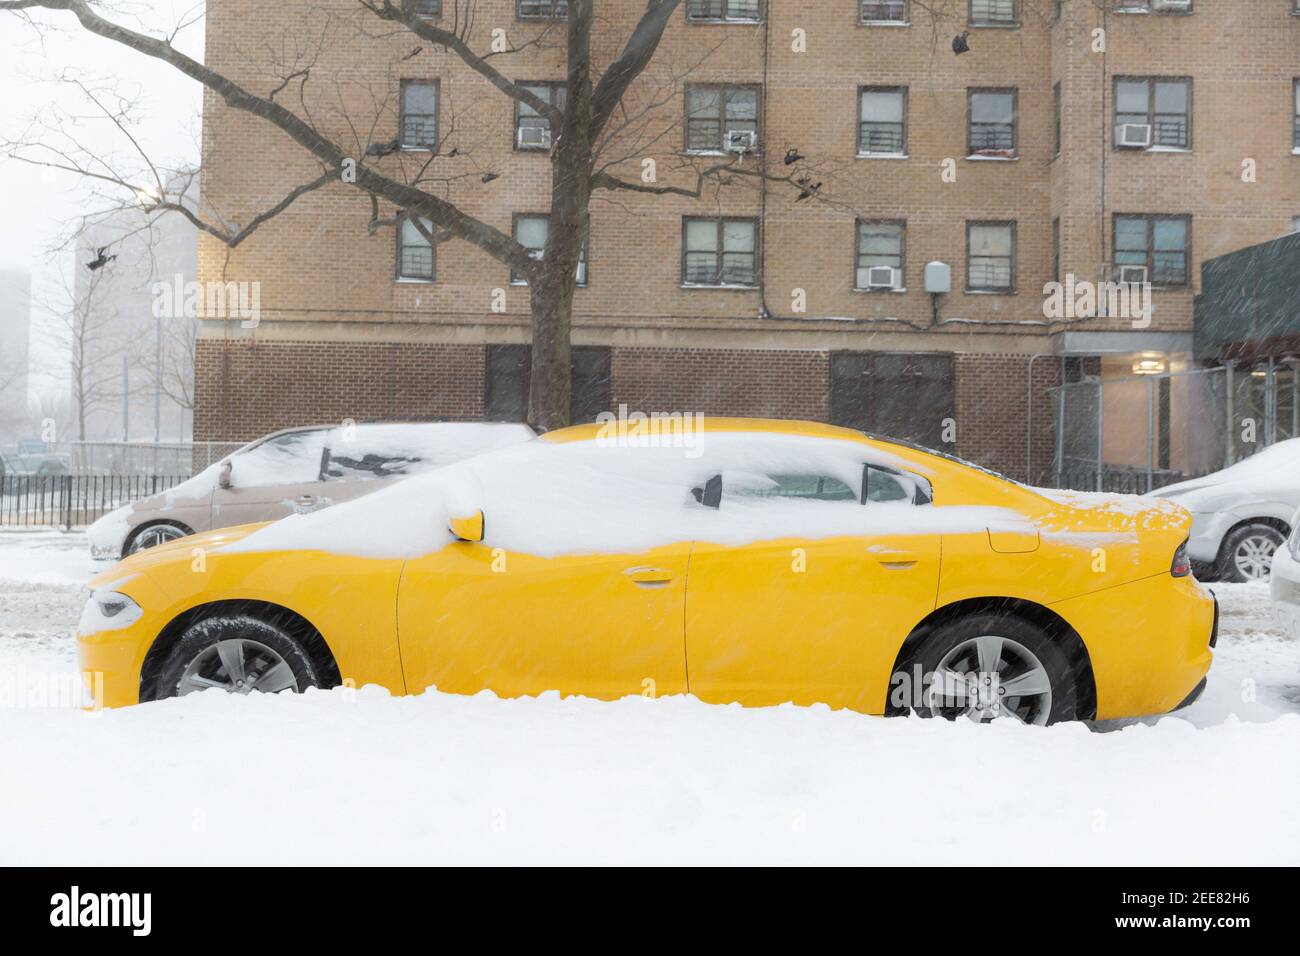 Voiture jaune recouverte de neige avec des bâtiments à l'arrière-plan sur la rue City. Sensation de neige et de circulation. Idées de travail à la maison. Banque D'Images